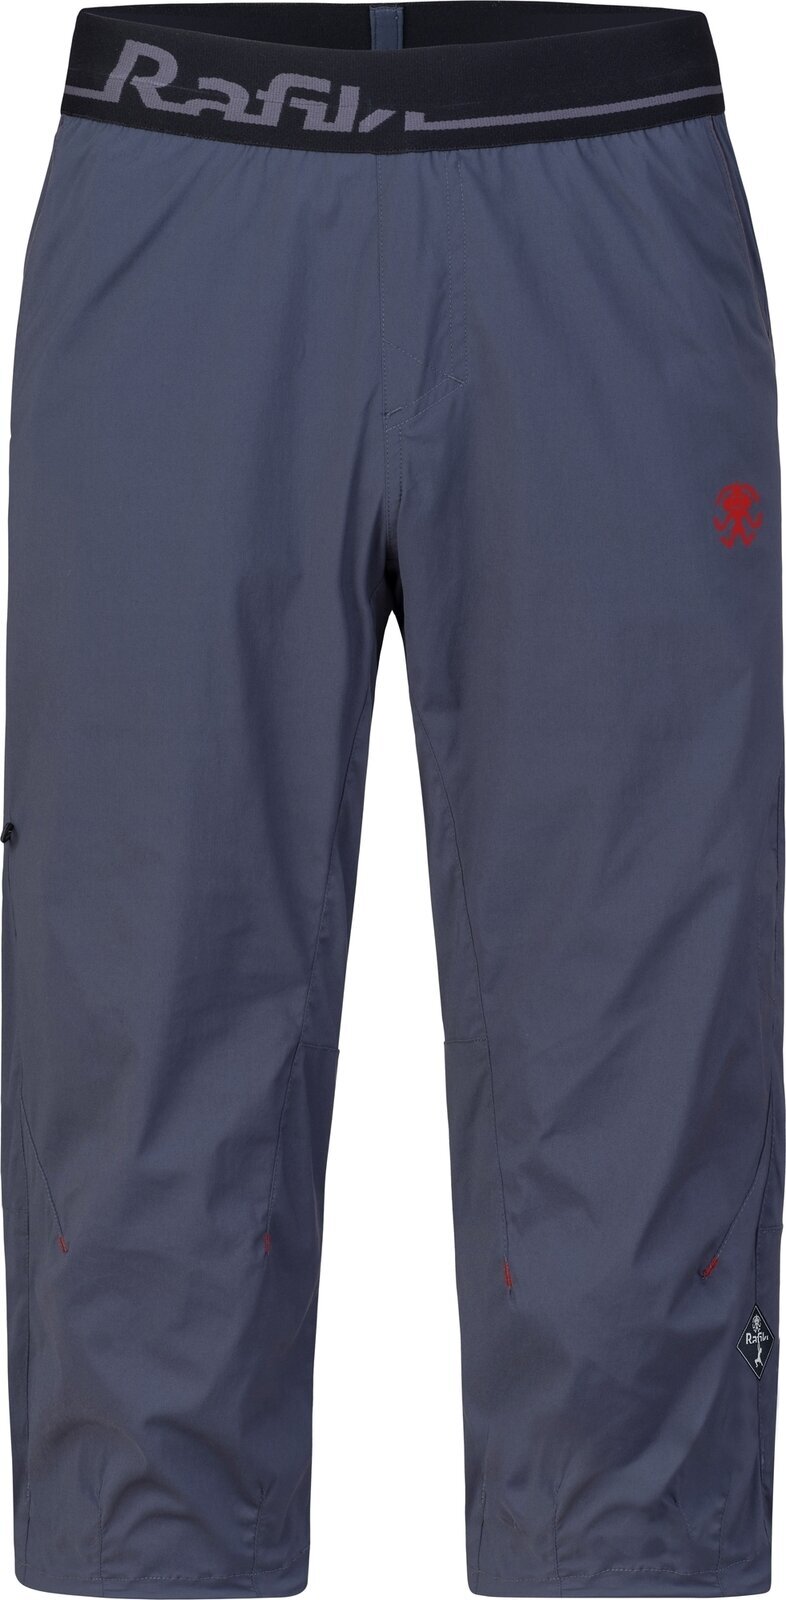 Παντελόνι Outdoor Rafiki Moonstone Man 3/4 Trousers India Ink XL Παντελόνι Outdoor